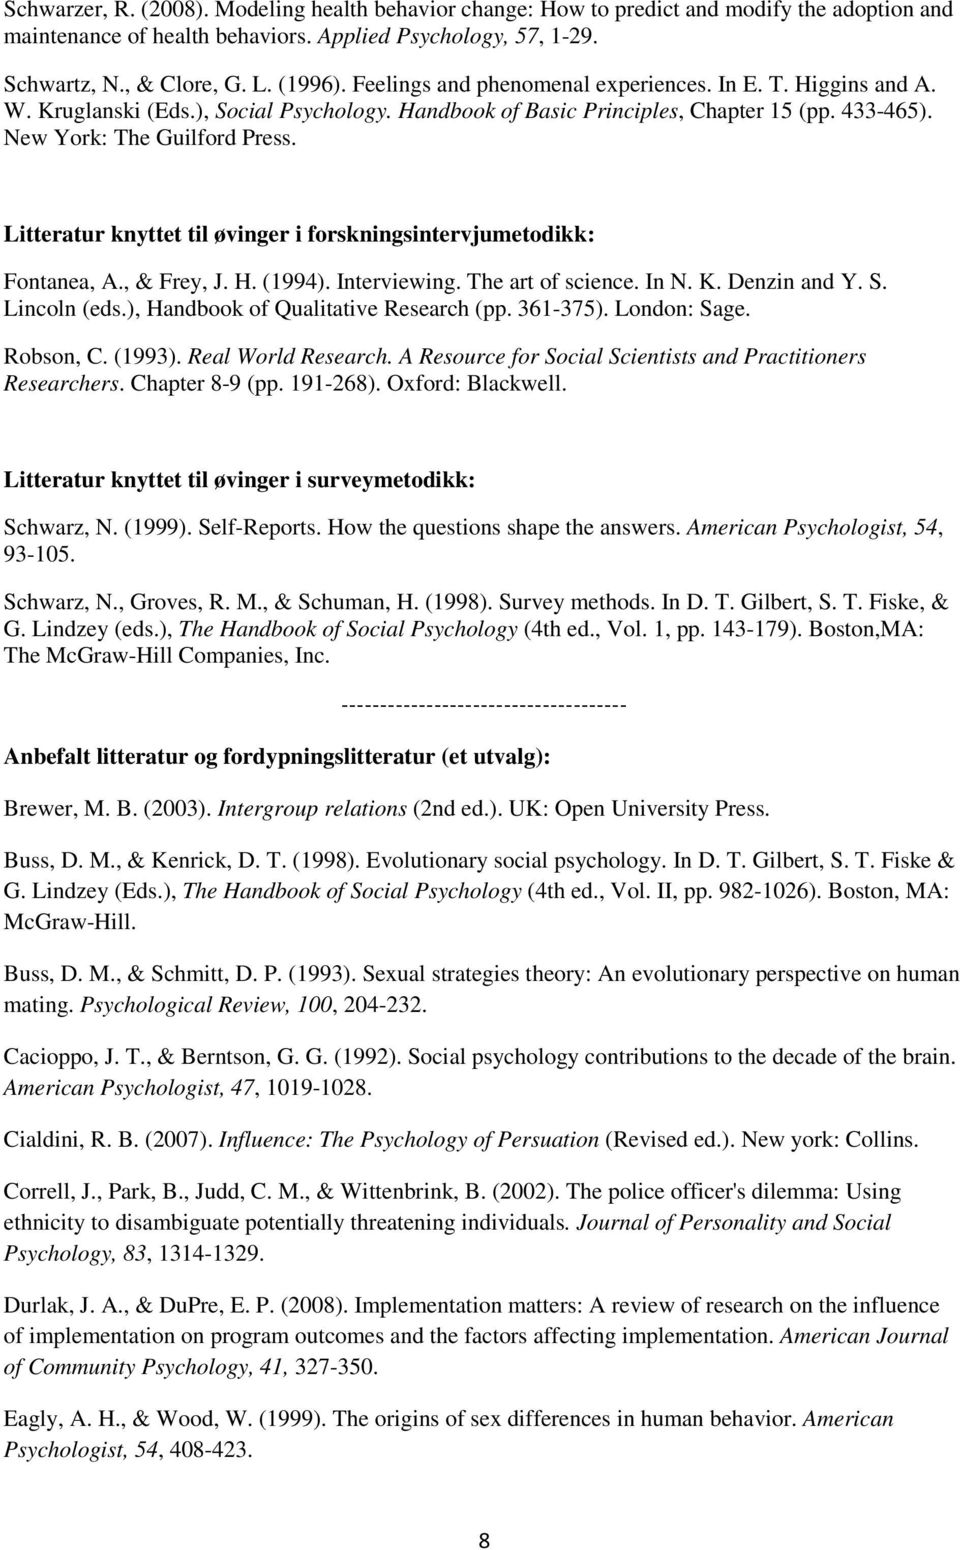 Litteratur knyttet til øvinger i forskningsintervjumetodikk: Fontanea, A., & Frey, J. H. (1994). Interviewing. The art of science. In N. K. Denzin and Y. S. Lincoln (eds.